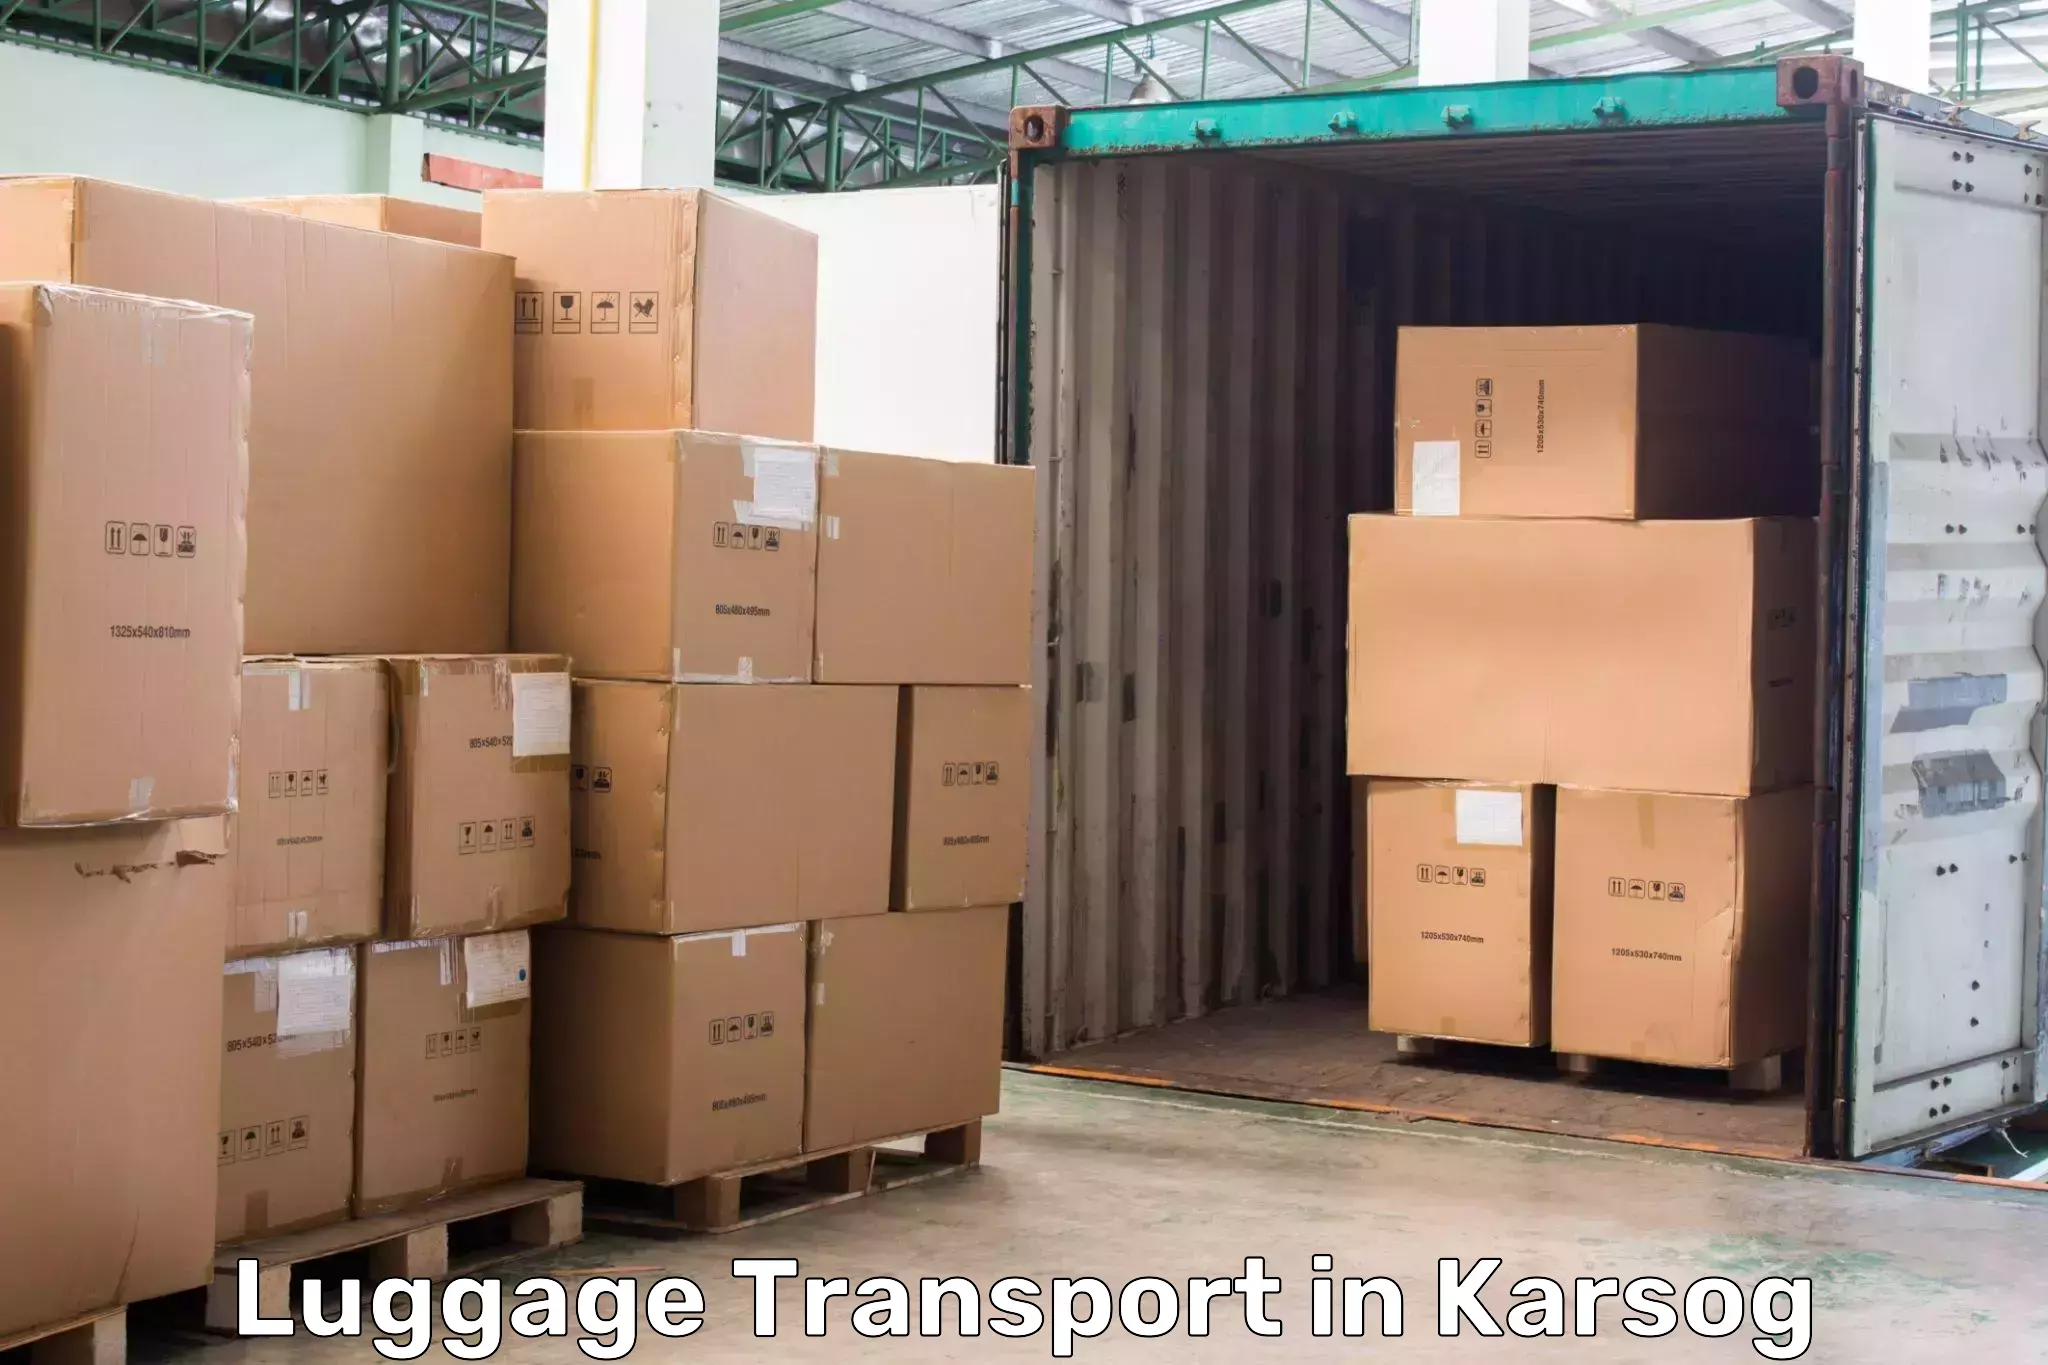 Baggage transport network in Karsog